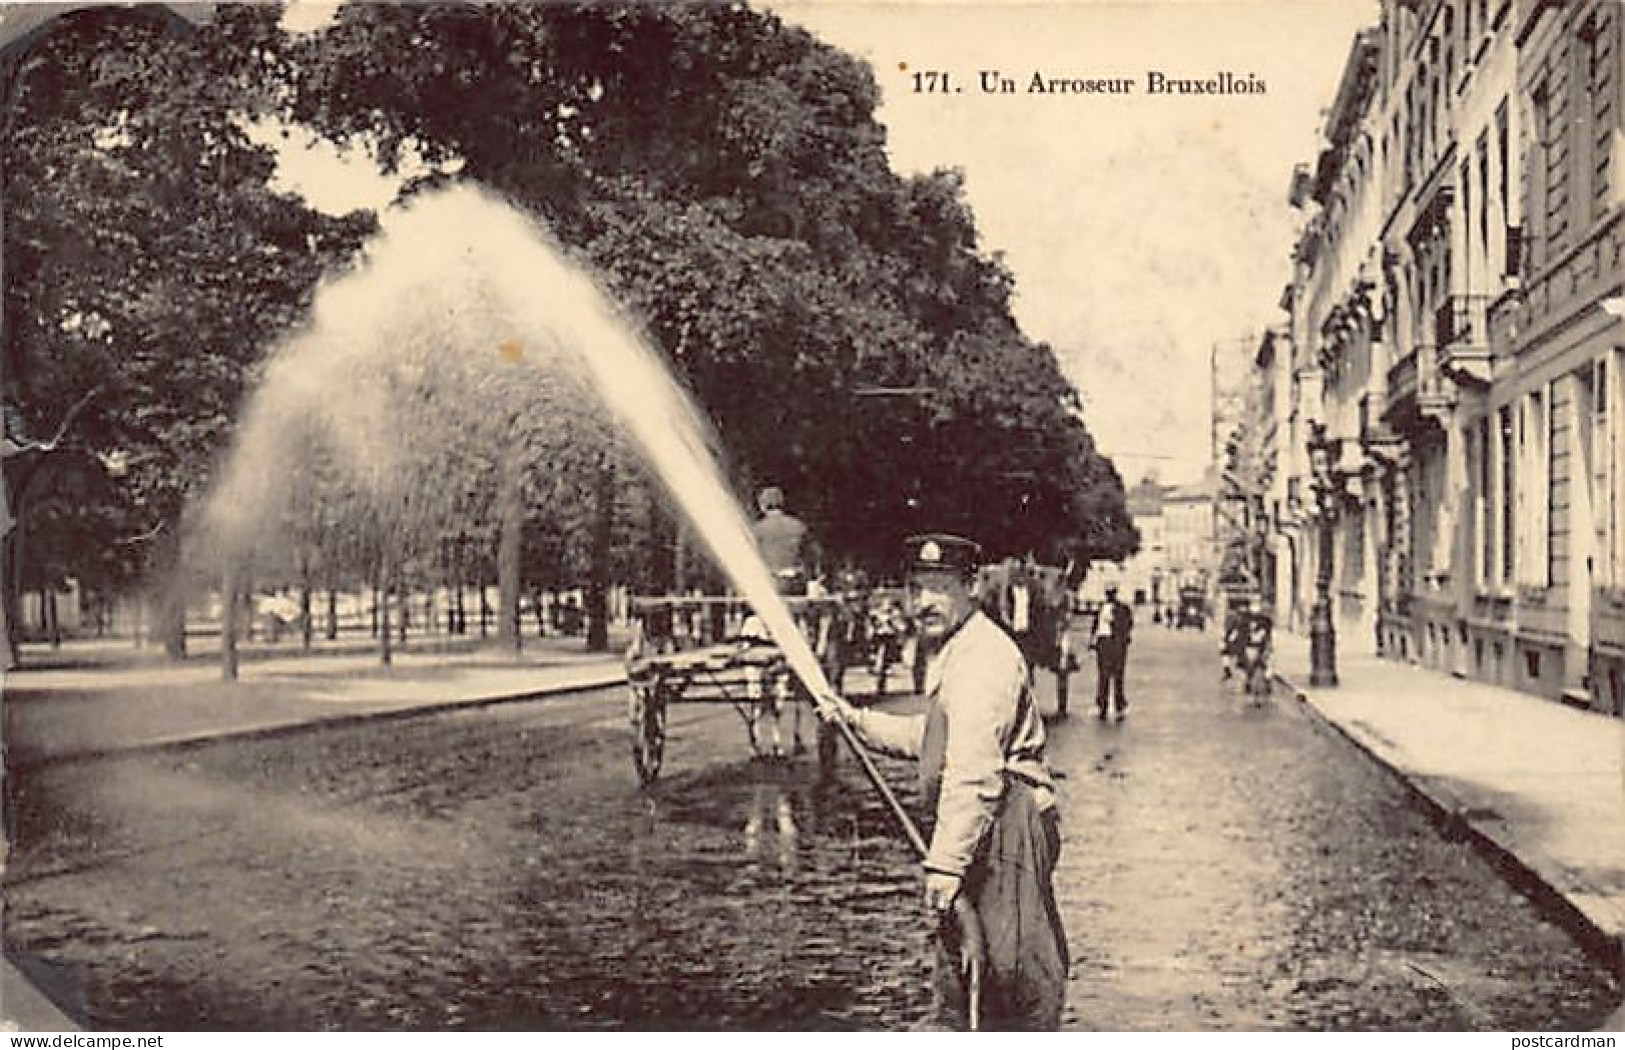 Belgique - BRUXELLES - Un Arroseur Bruxellois - Ed. Grand Bazar Anspach 171 - Old Professions